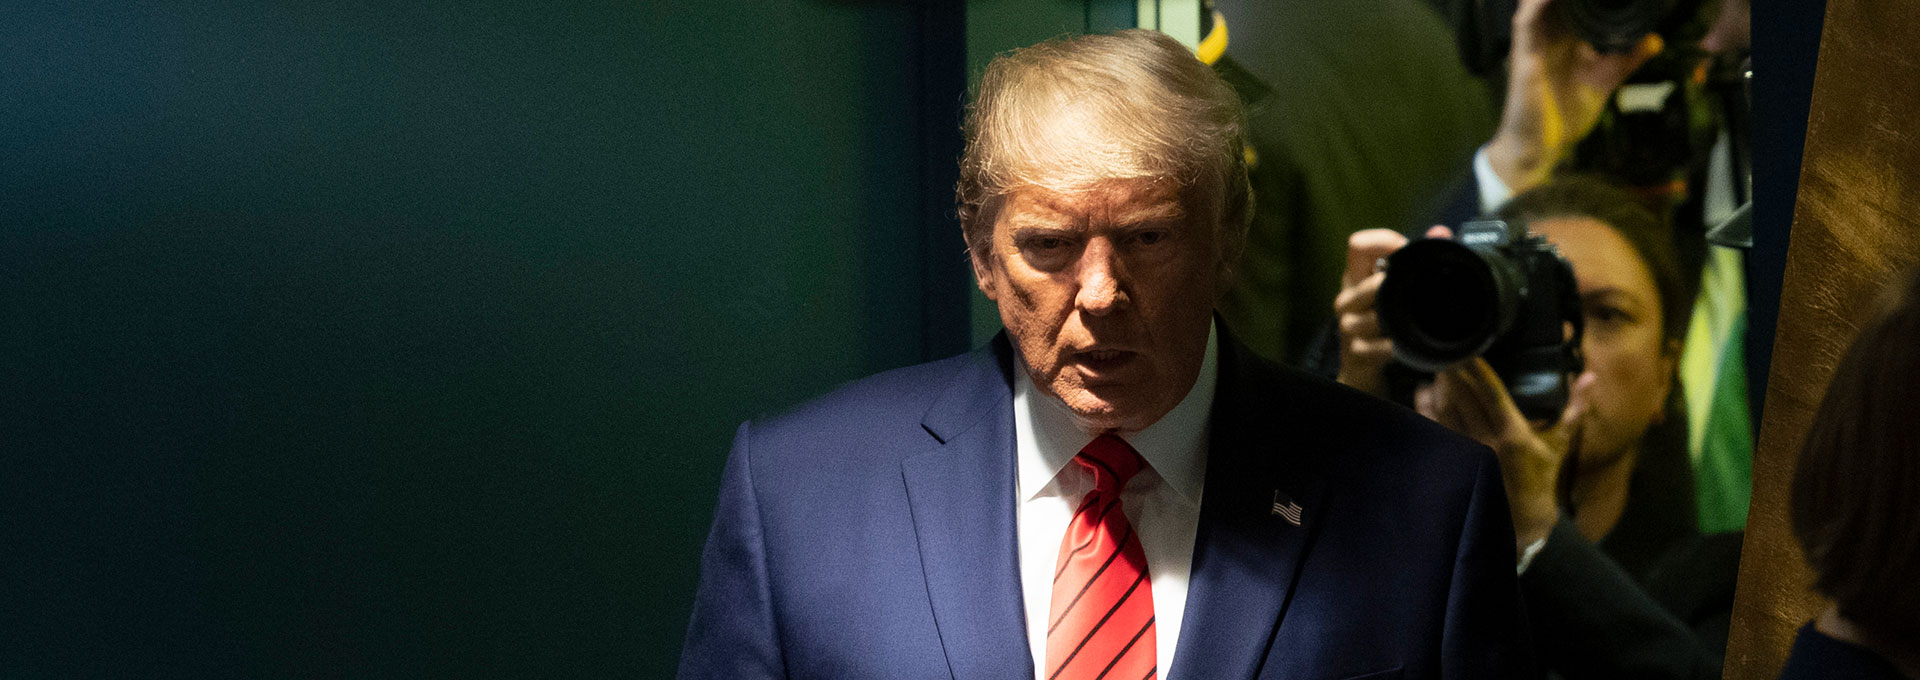 Historia de un 'impeachment': claves del proceso que puede acabar con Trump